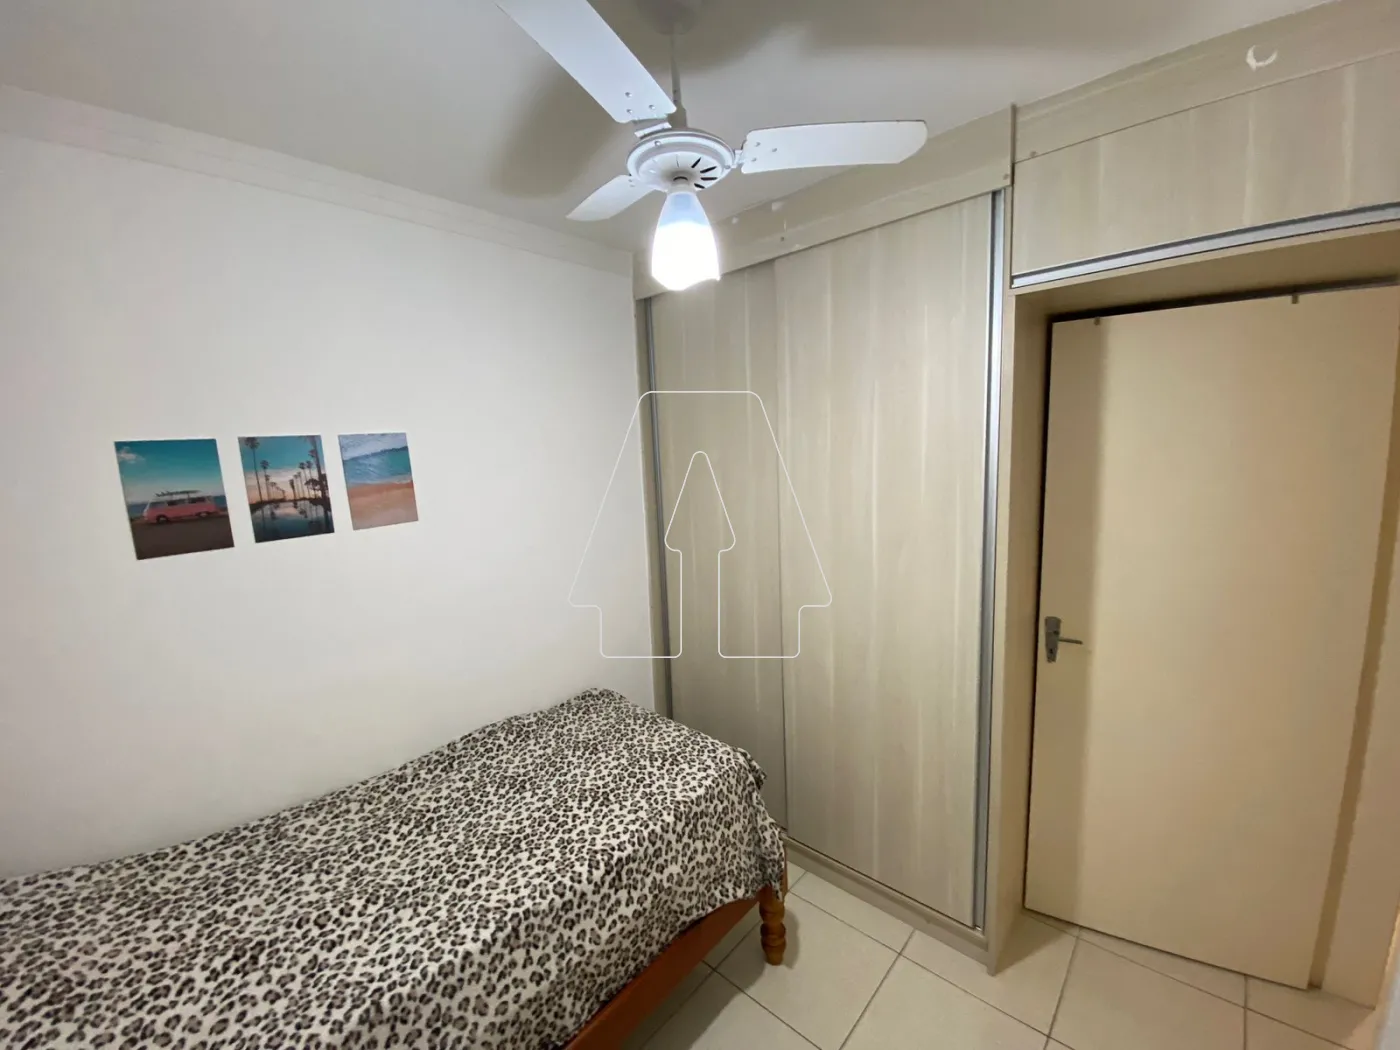 Comprar Apartamento / Padrão em Araçatuba R$ 220.000,00 - Foto 8